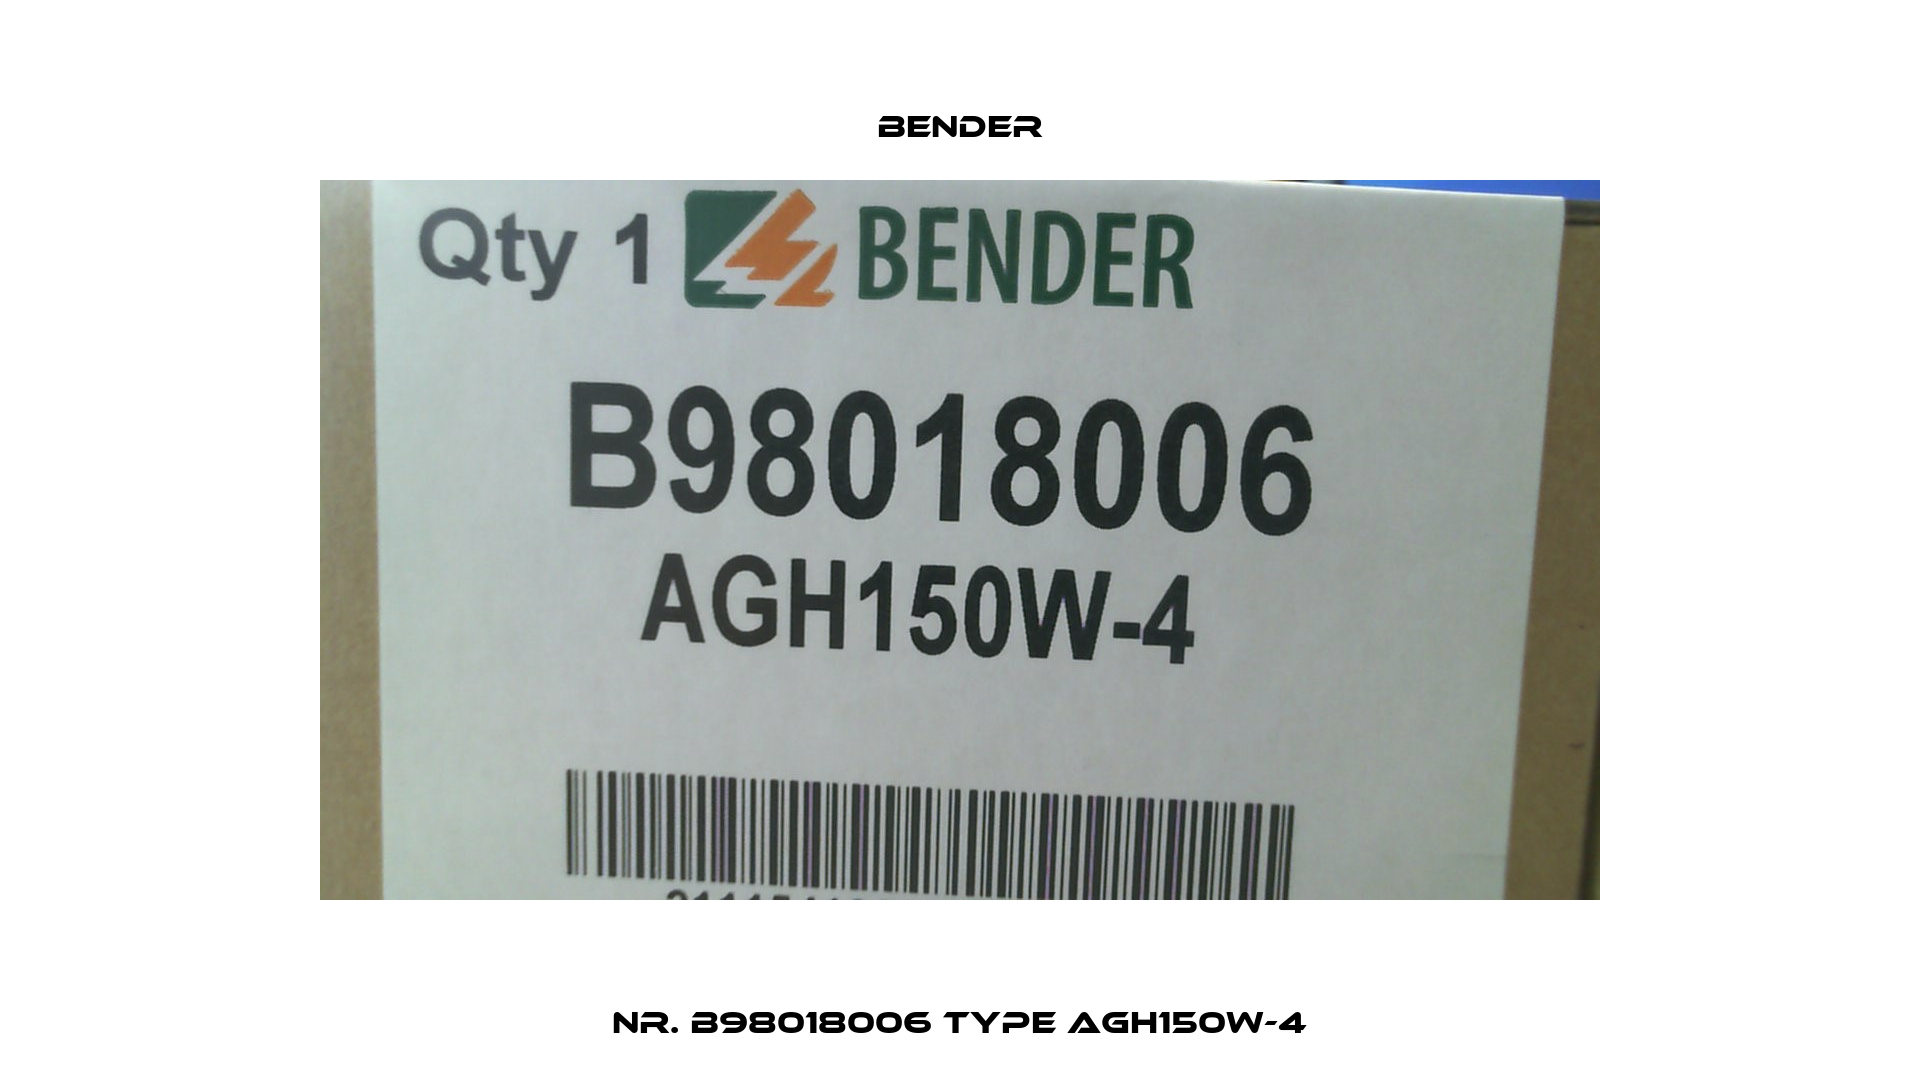 Nr. B98018006 Type AGH150W-4 Bender